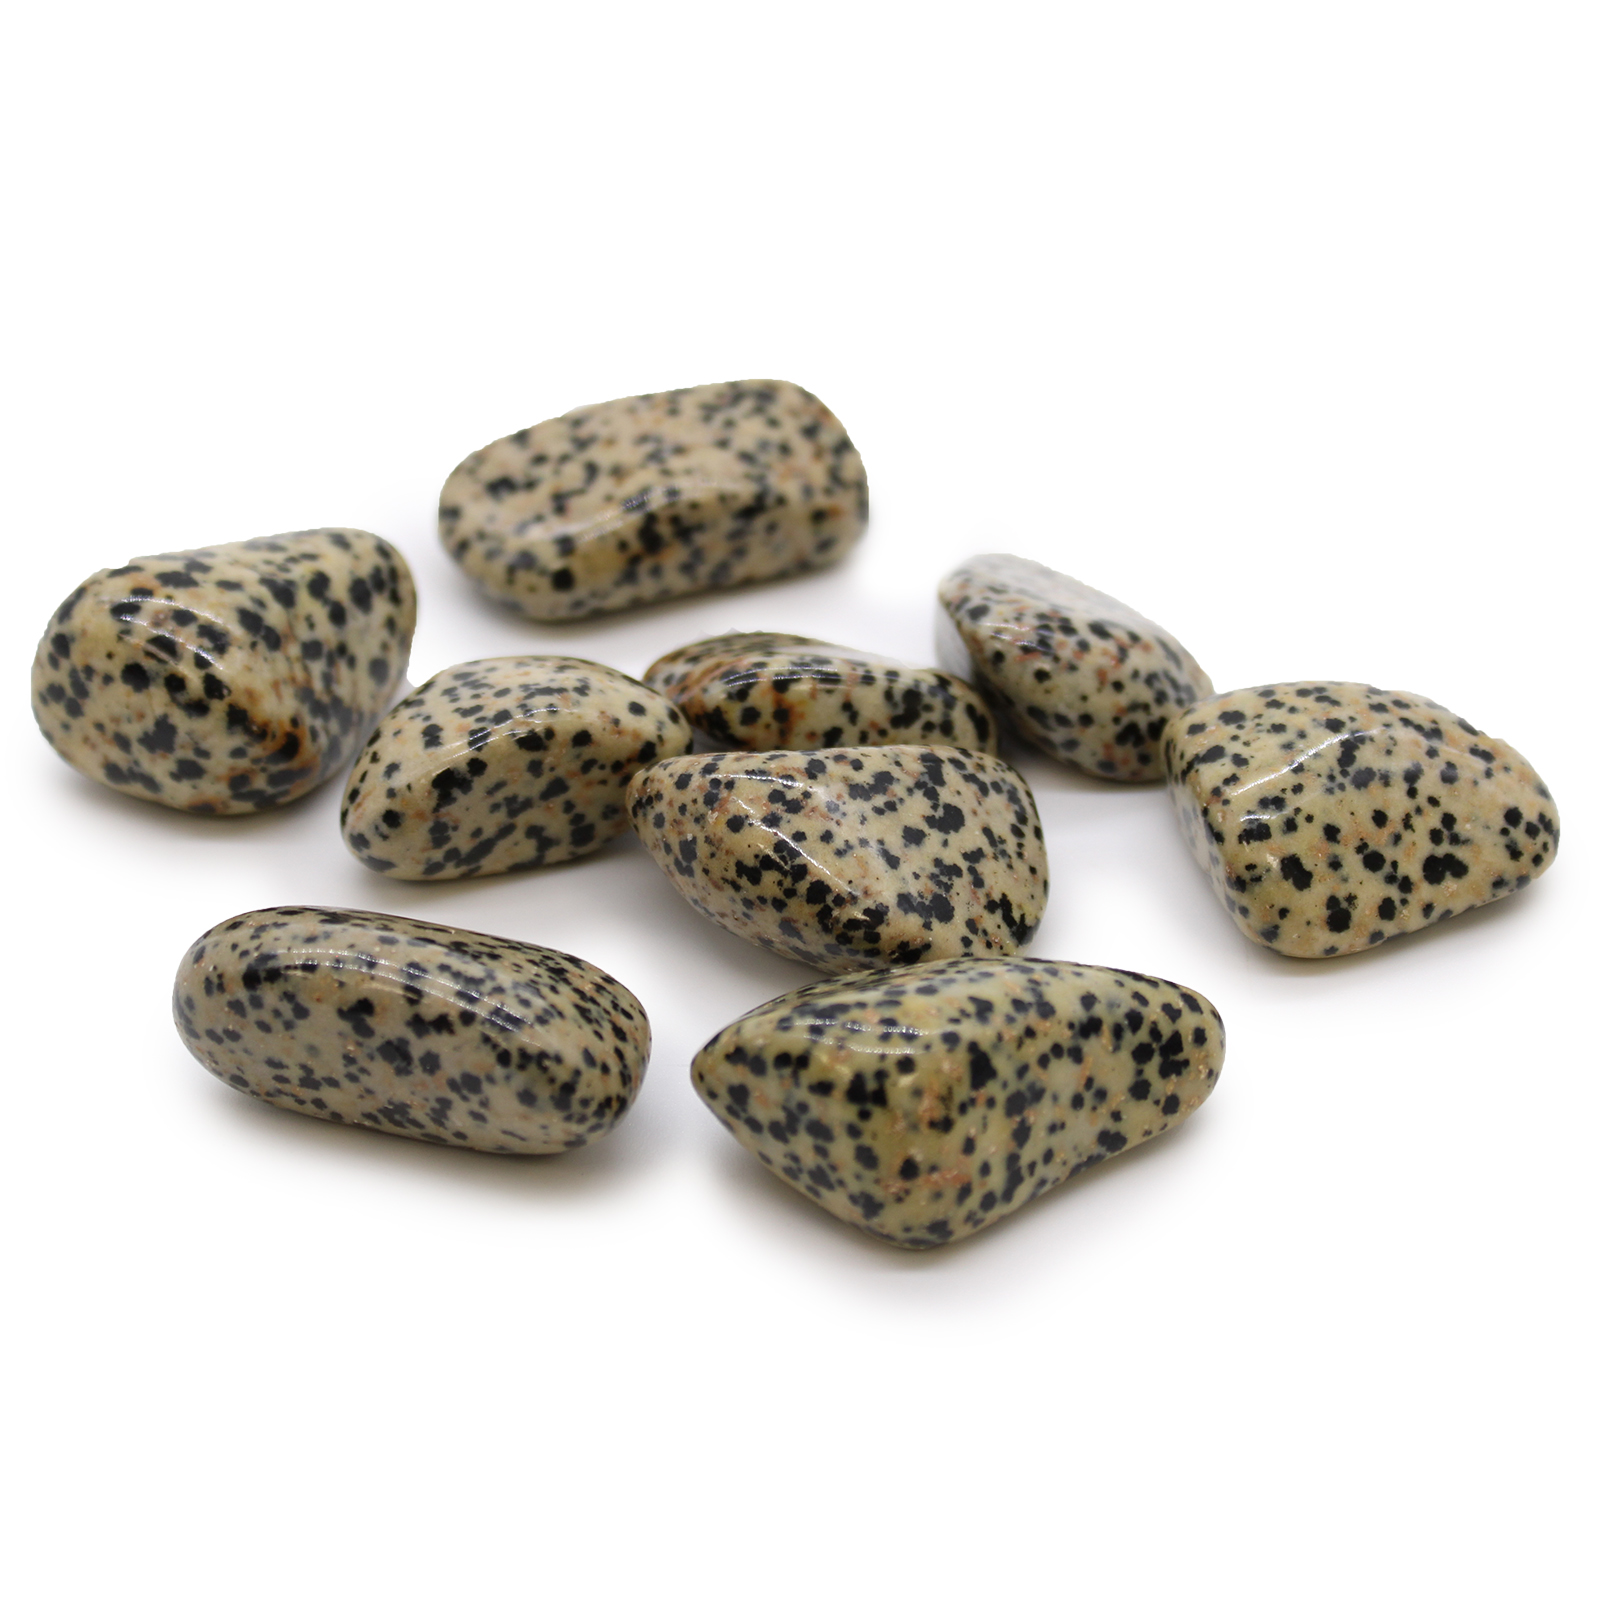 XL Tumble Stones - Dalmation Stone